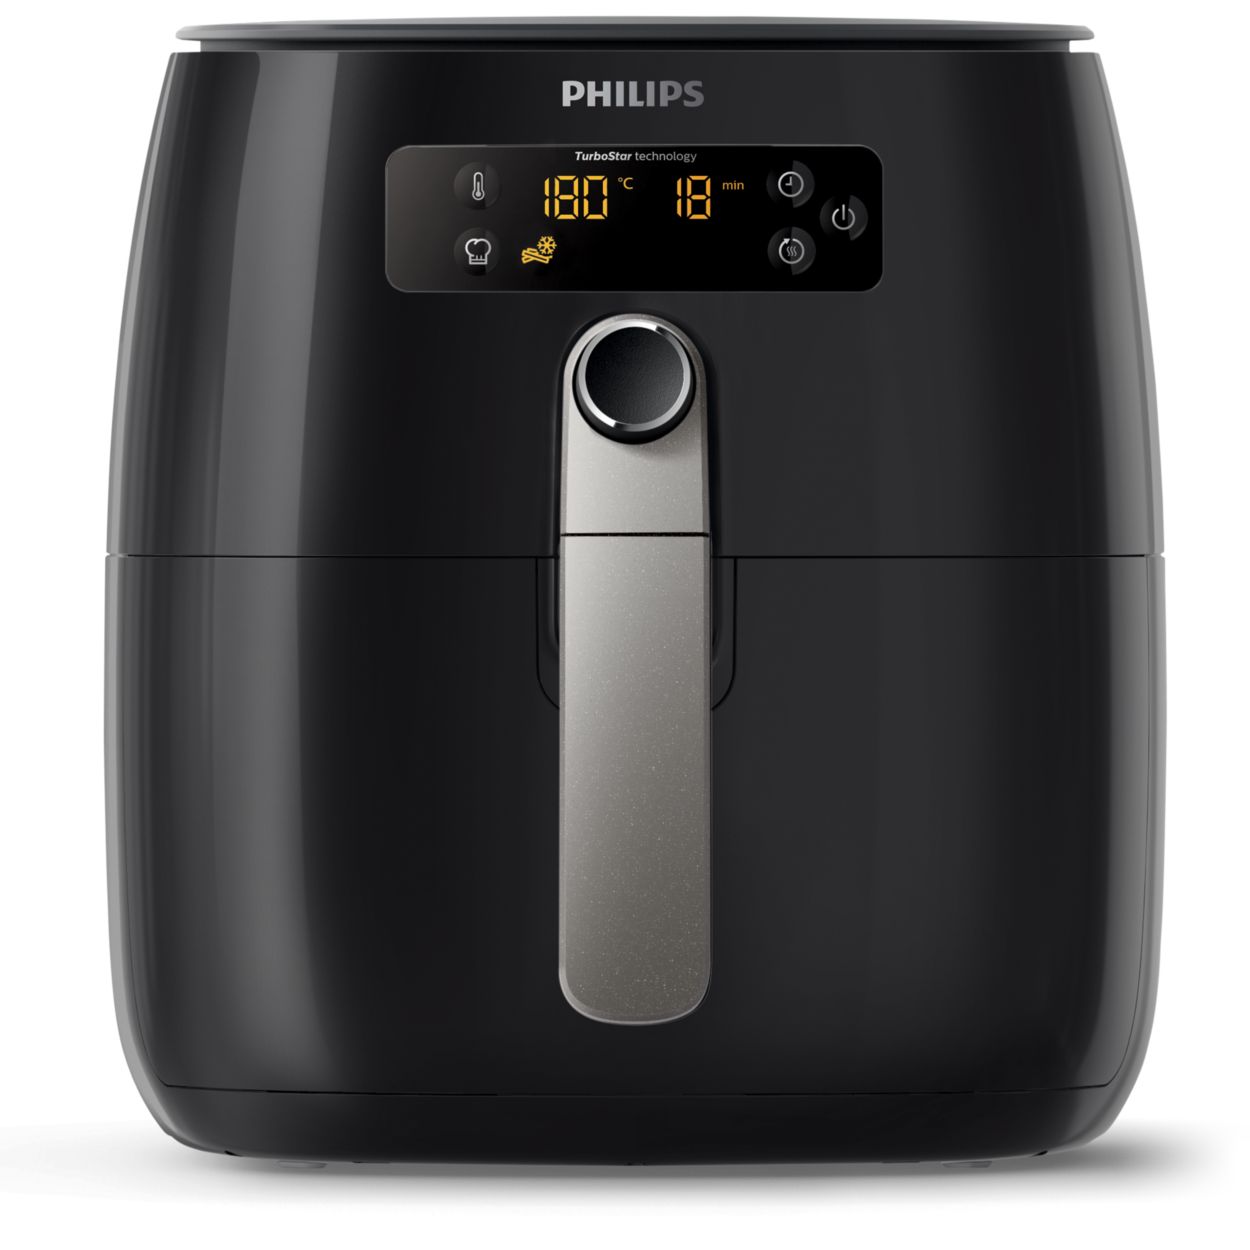 Philips HD9741/10 Airfryer : Test et avis sur cette friteuse compact